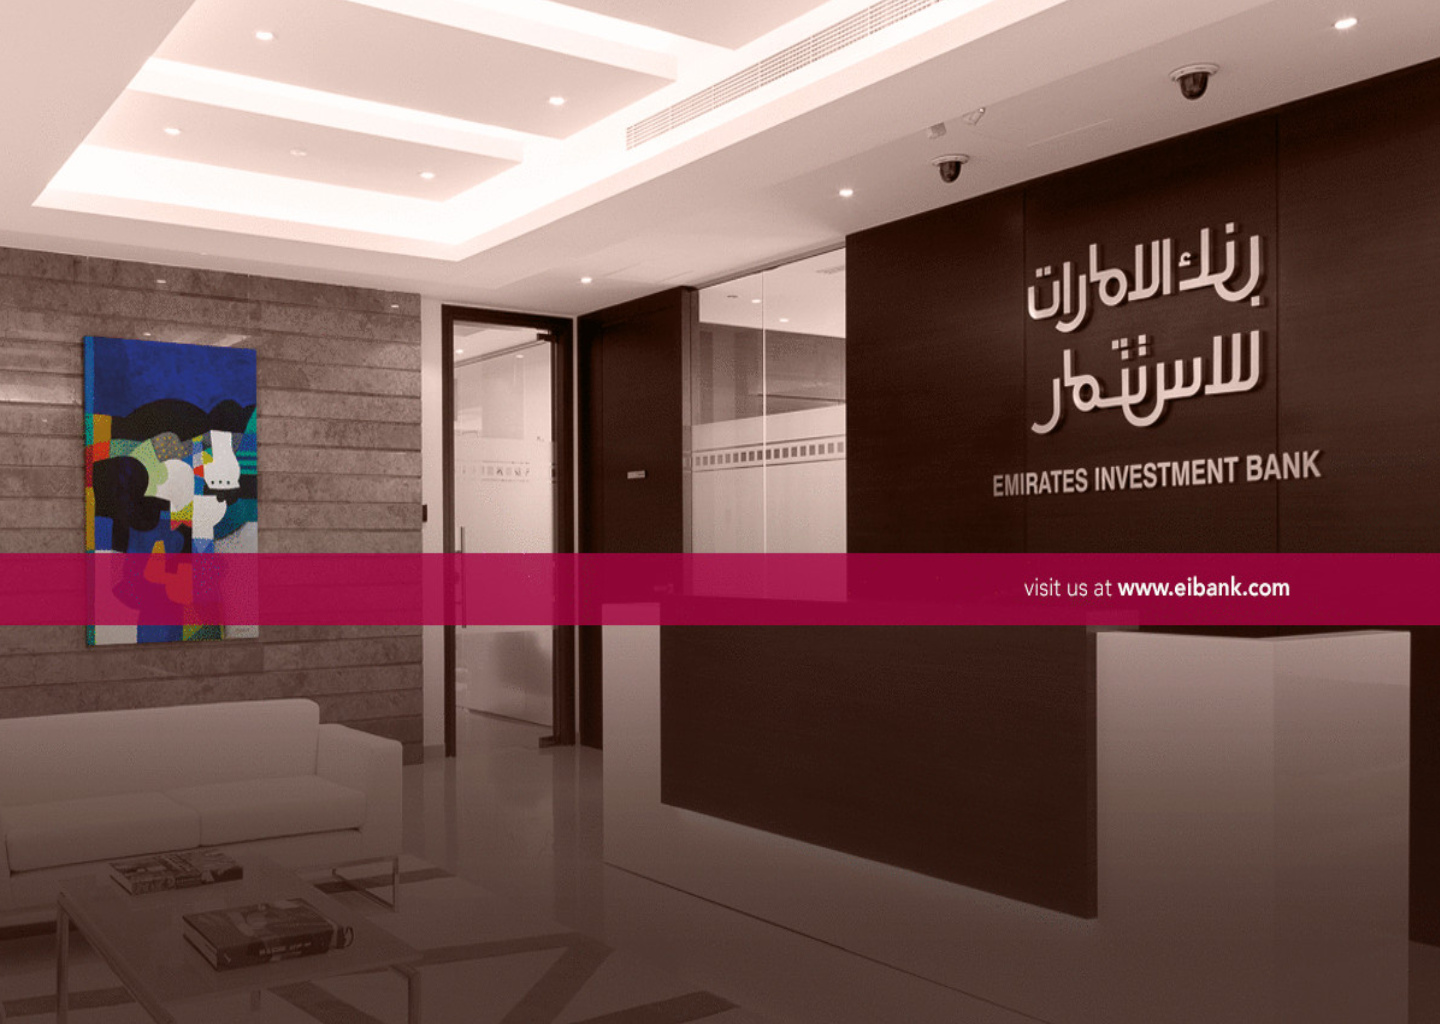 معلومات عن بنك الإمارات للاستثمار